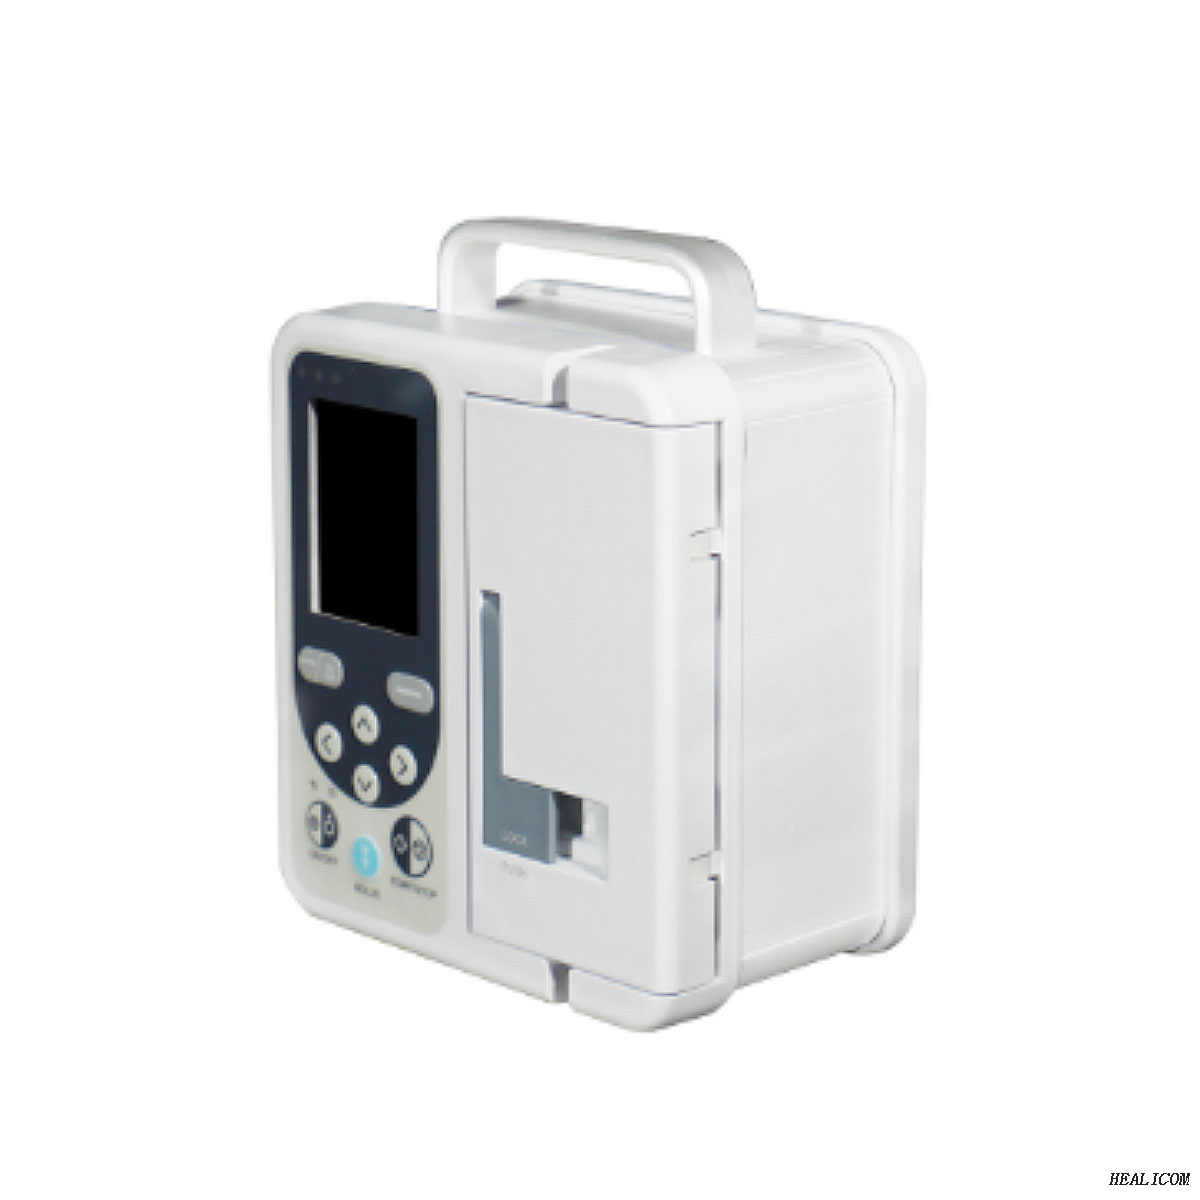 SP750 Pompa per infusione a siringa medica con schermo LED portatile per ospedale